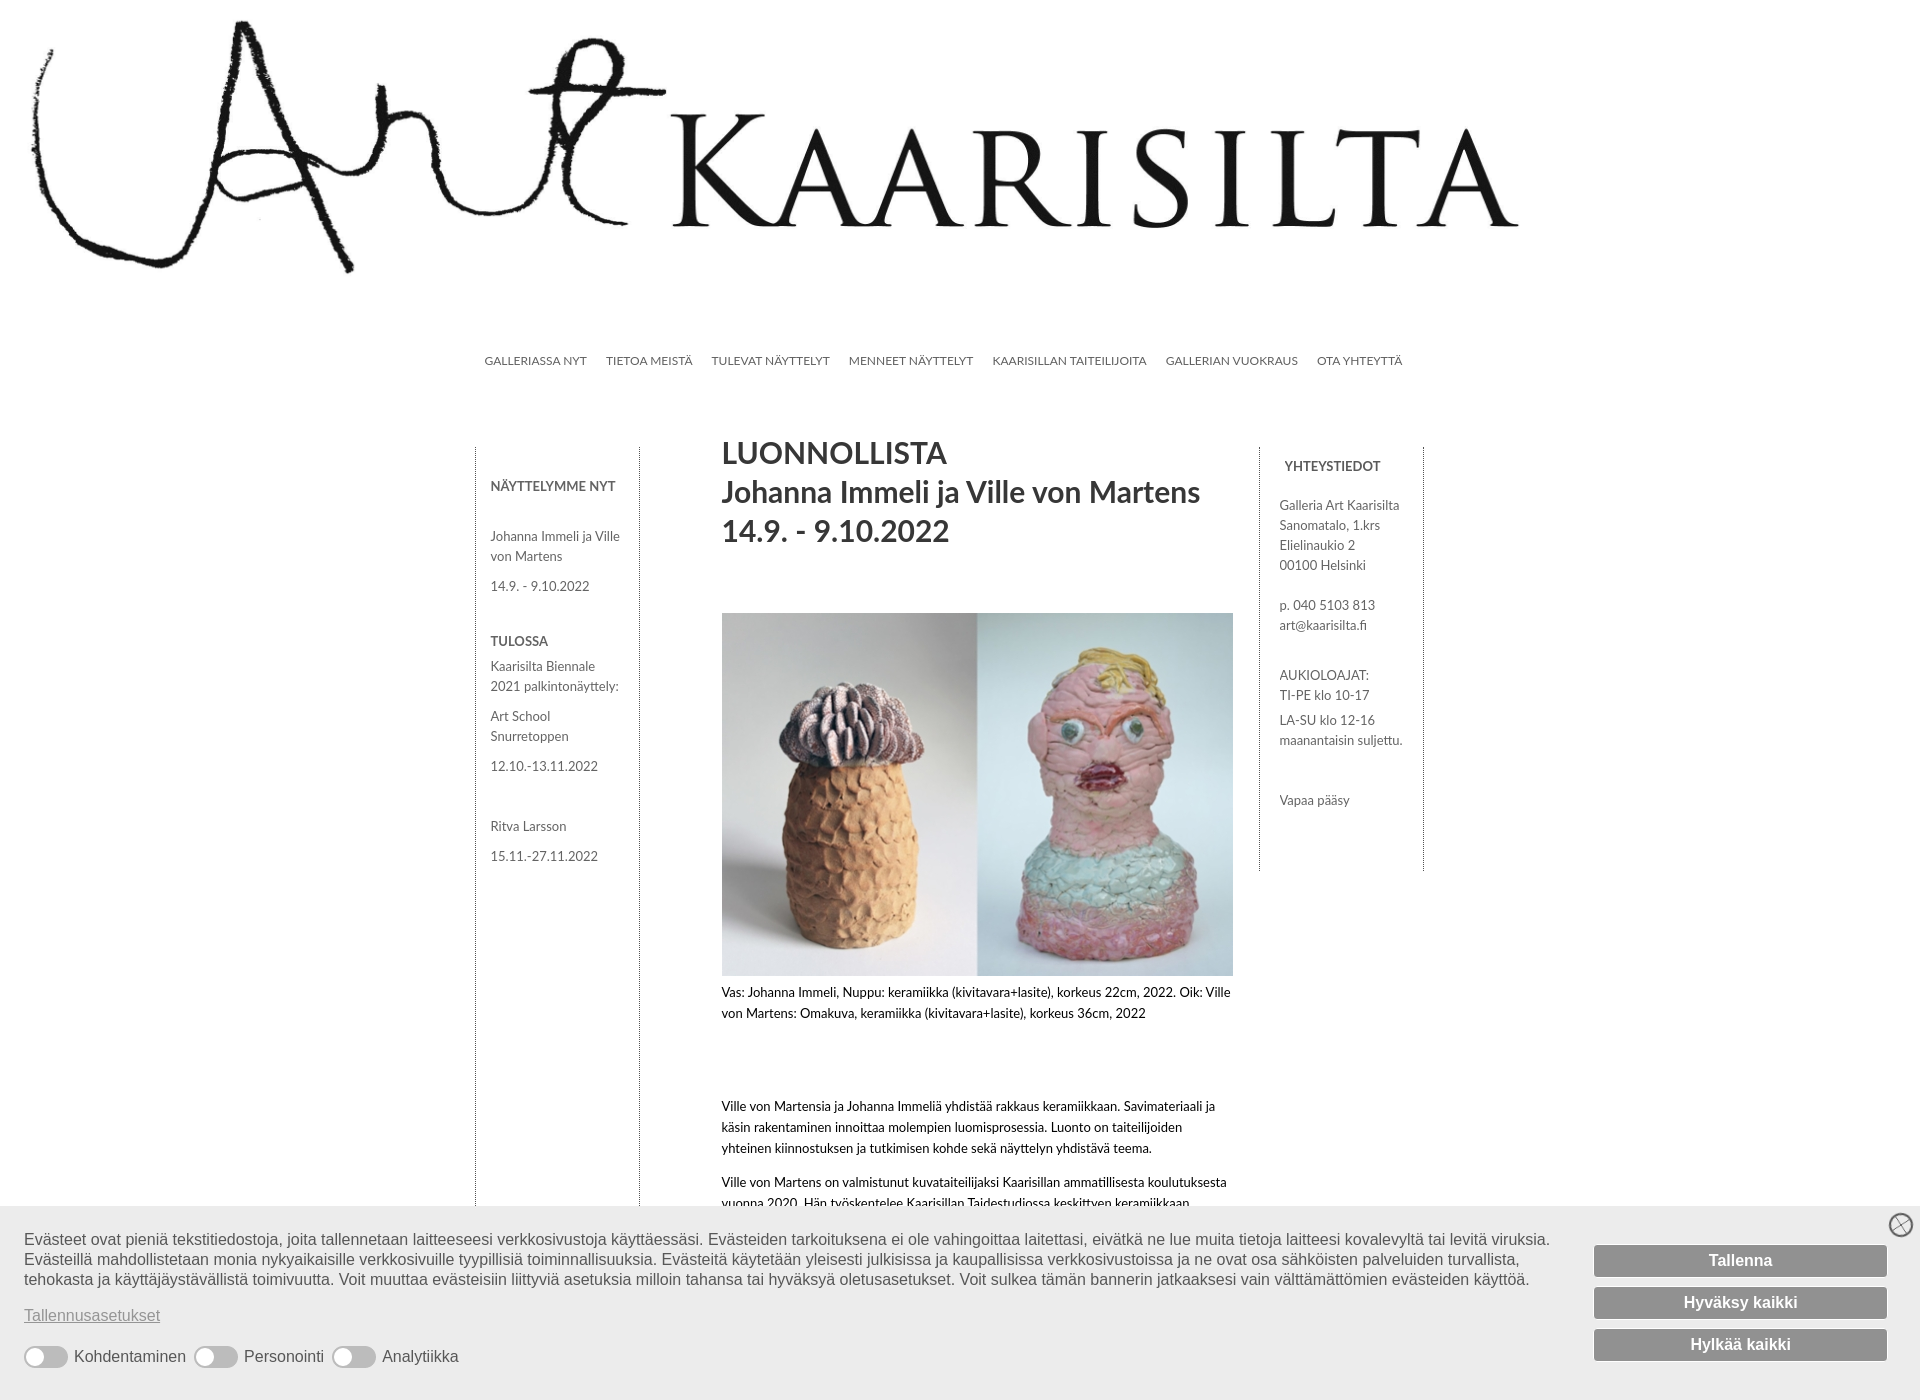 Skärmdump för artkaarisilta.fi